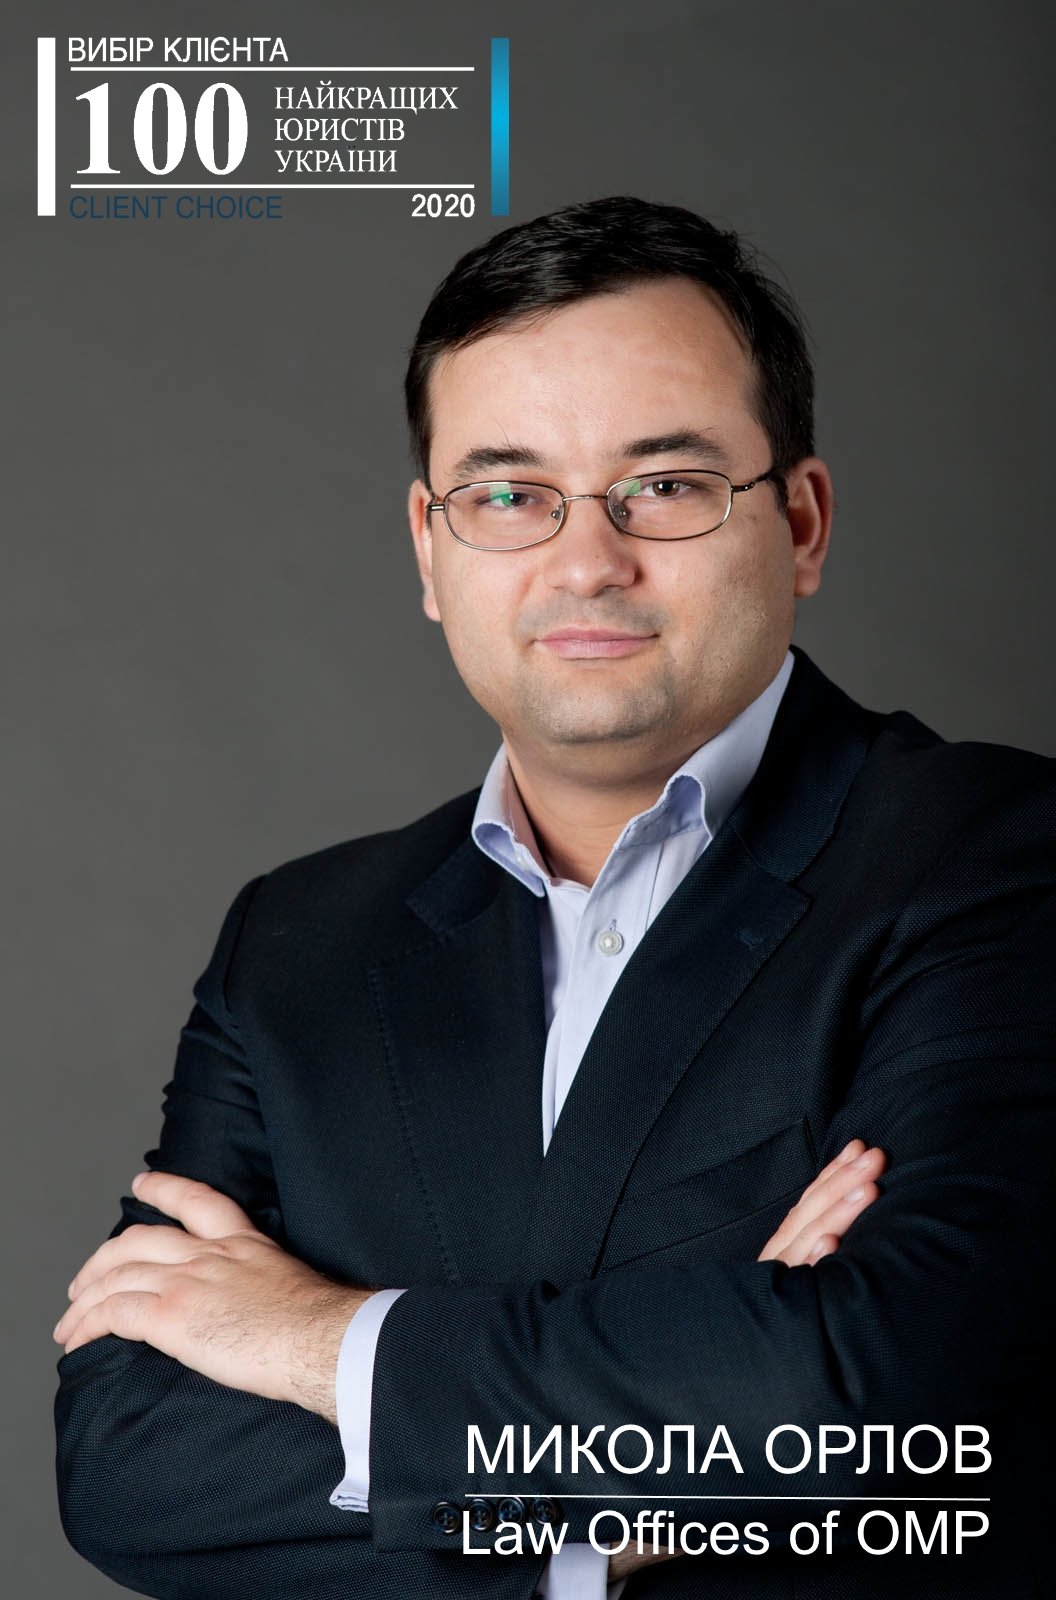 Mykola Orlov is among TOP100 best lawyers of Ukraine 2020